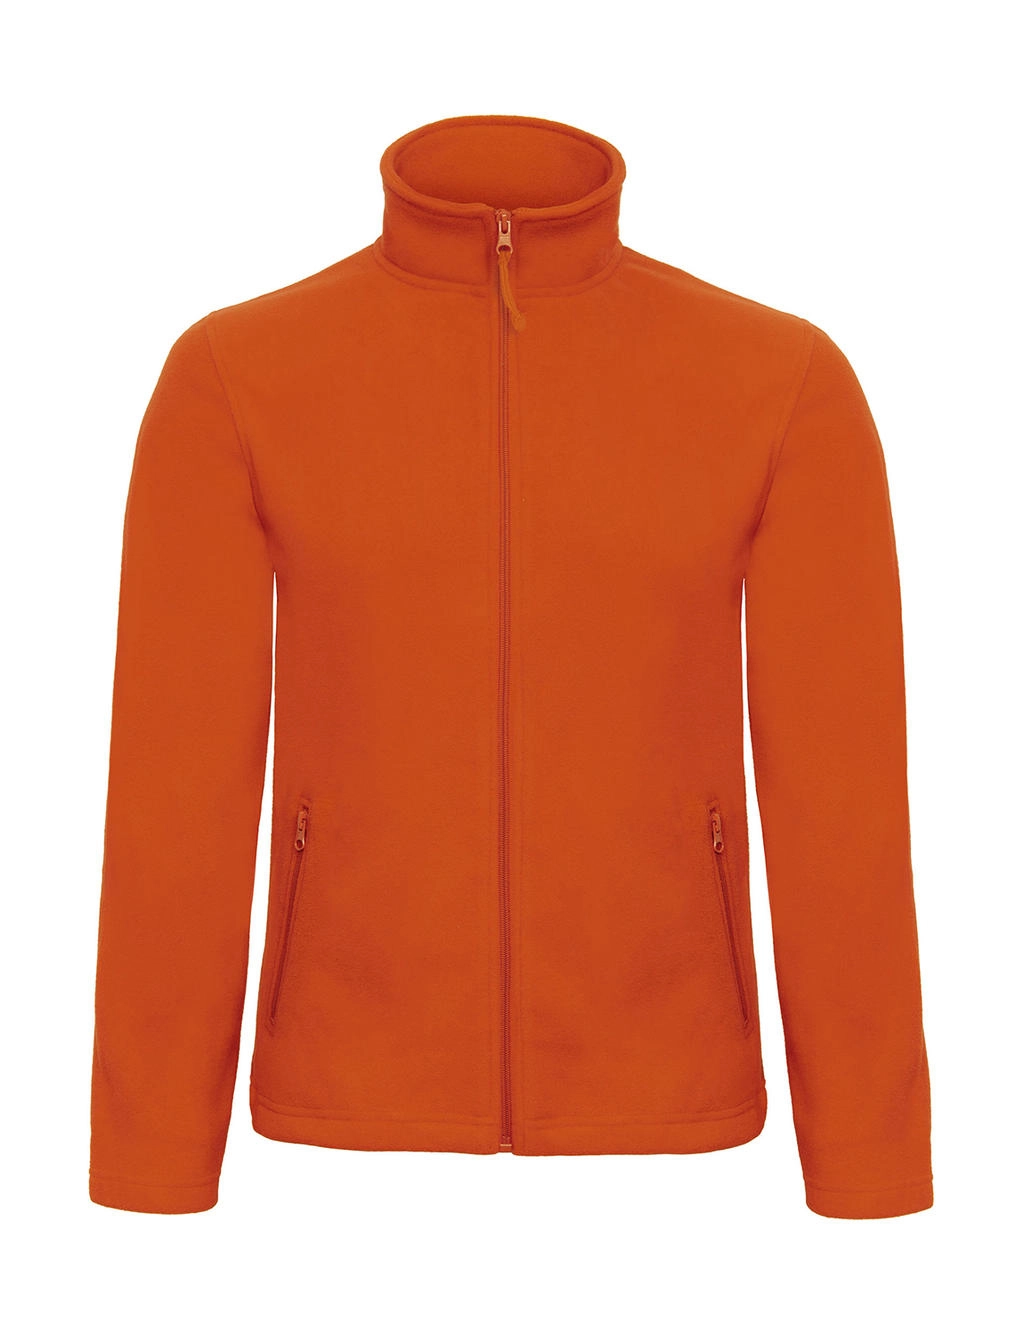 ID.501 Micro Fleece Full Zip zum Besticken und Bedrucken in der Farbe Pumpkin Orange mit Ihren Logo, Schriftzug oder Motiv.